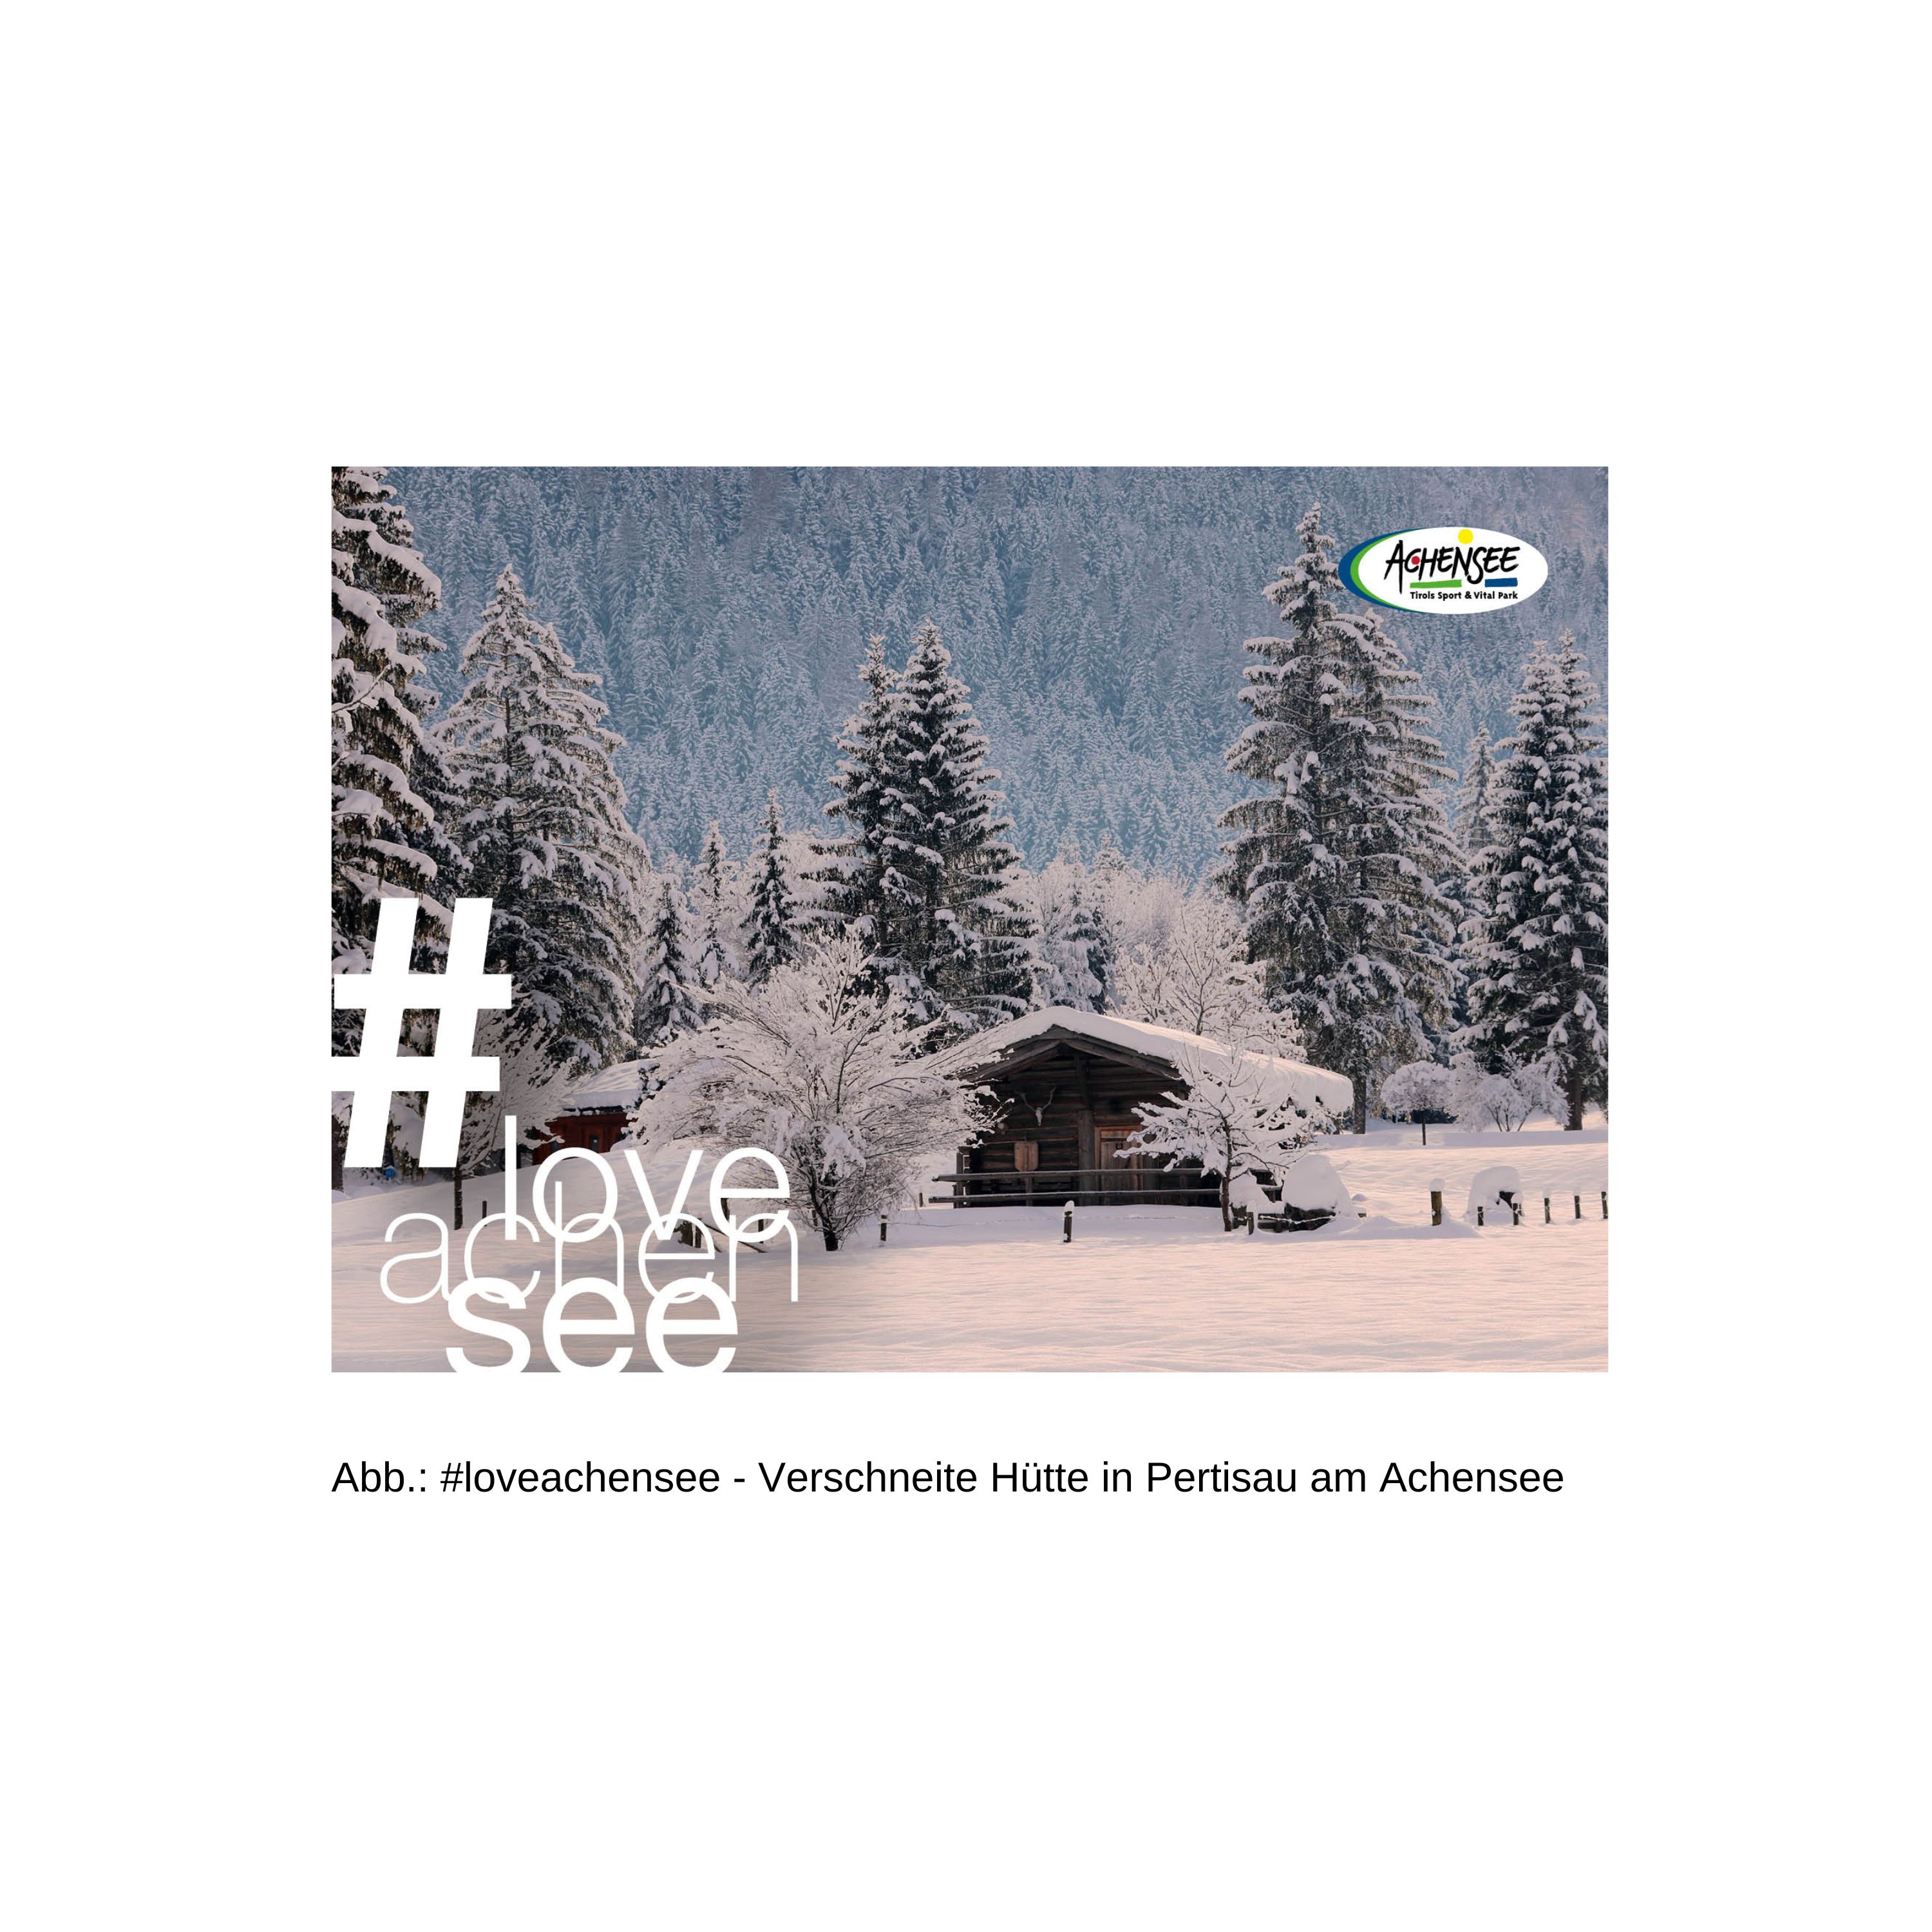 Postkarte mit einer verschneite Hütte in Pertisau